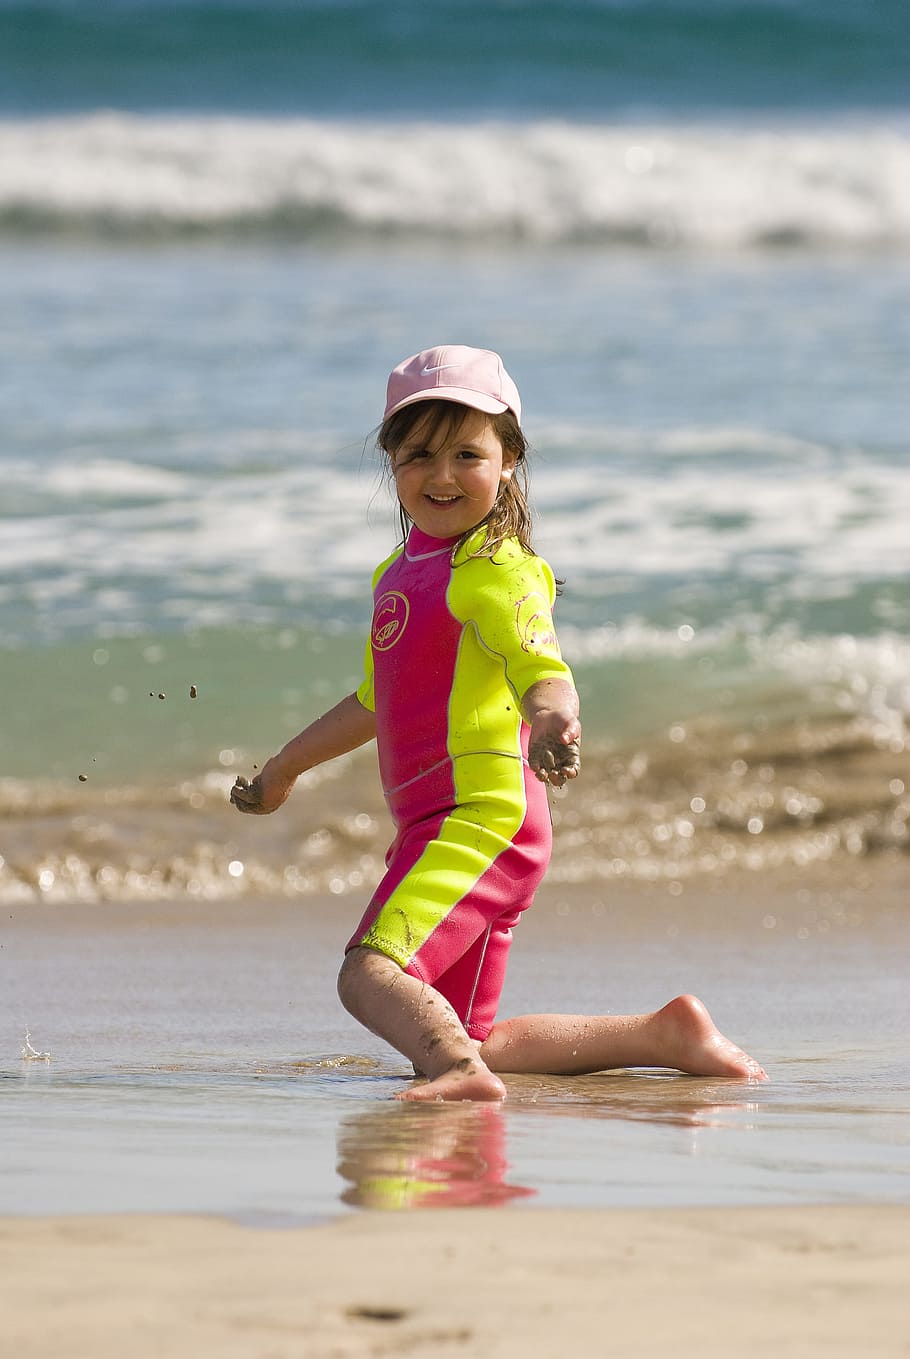 Menina, Roupa de mergulho, Praia, Areia, Sorriso, feliz, criança, comprimento total, somente crianças, infância